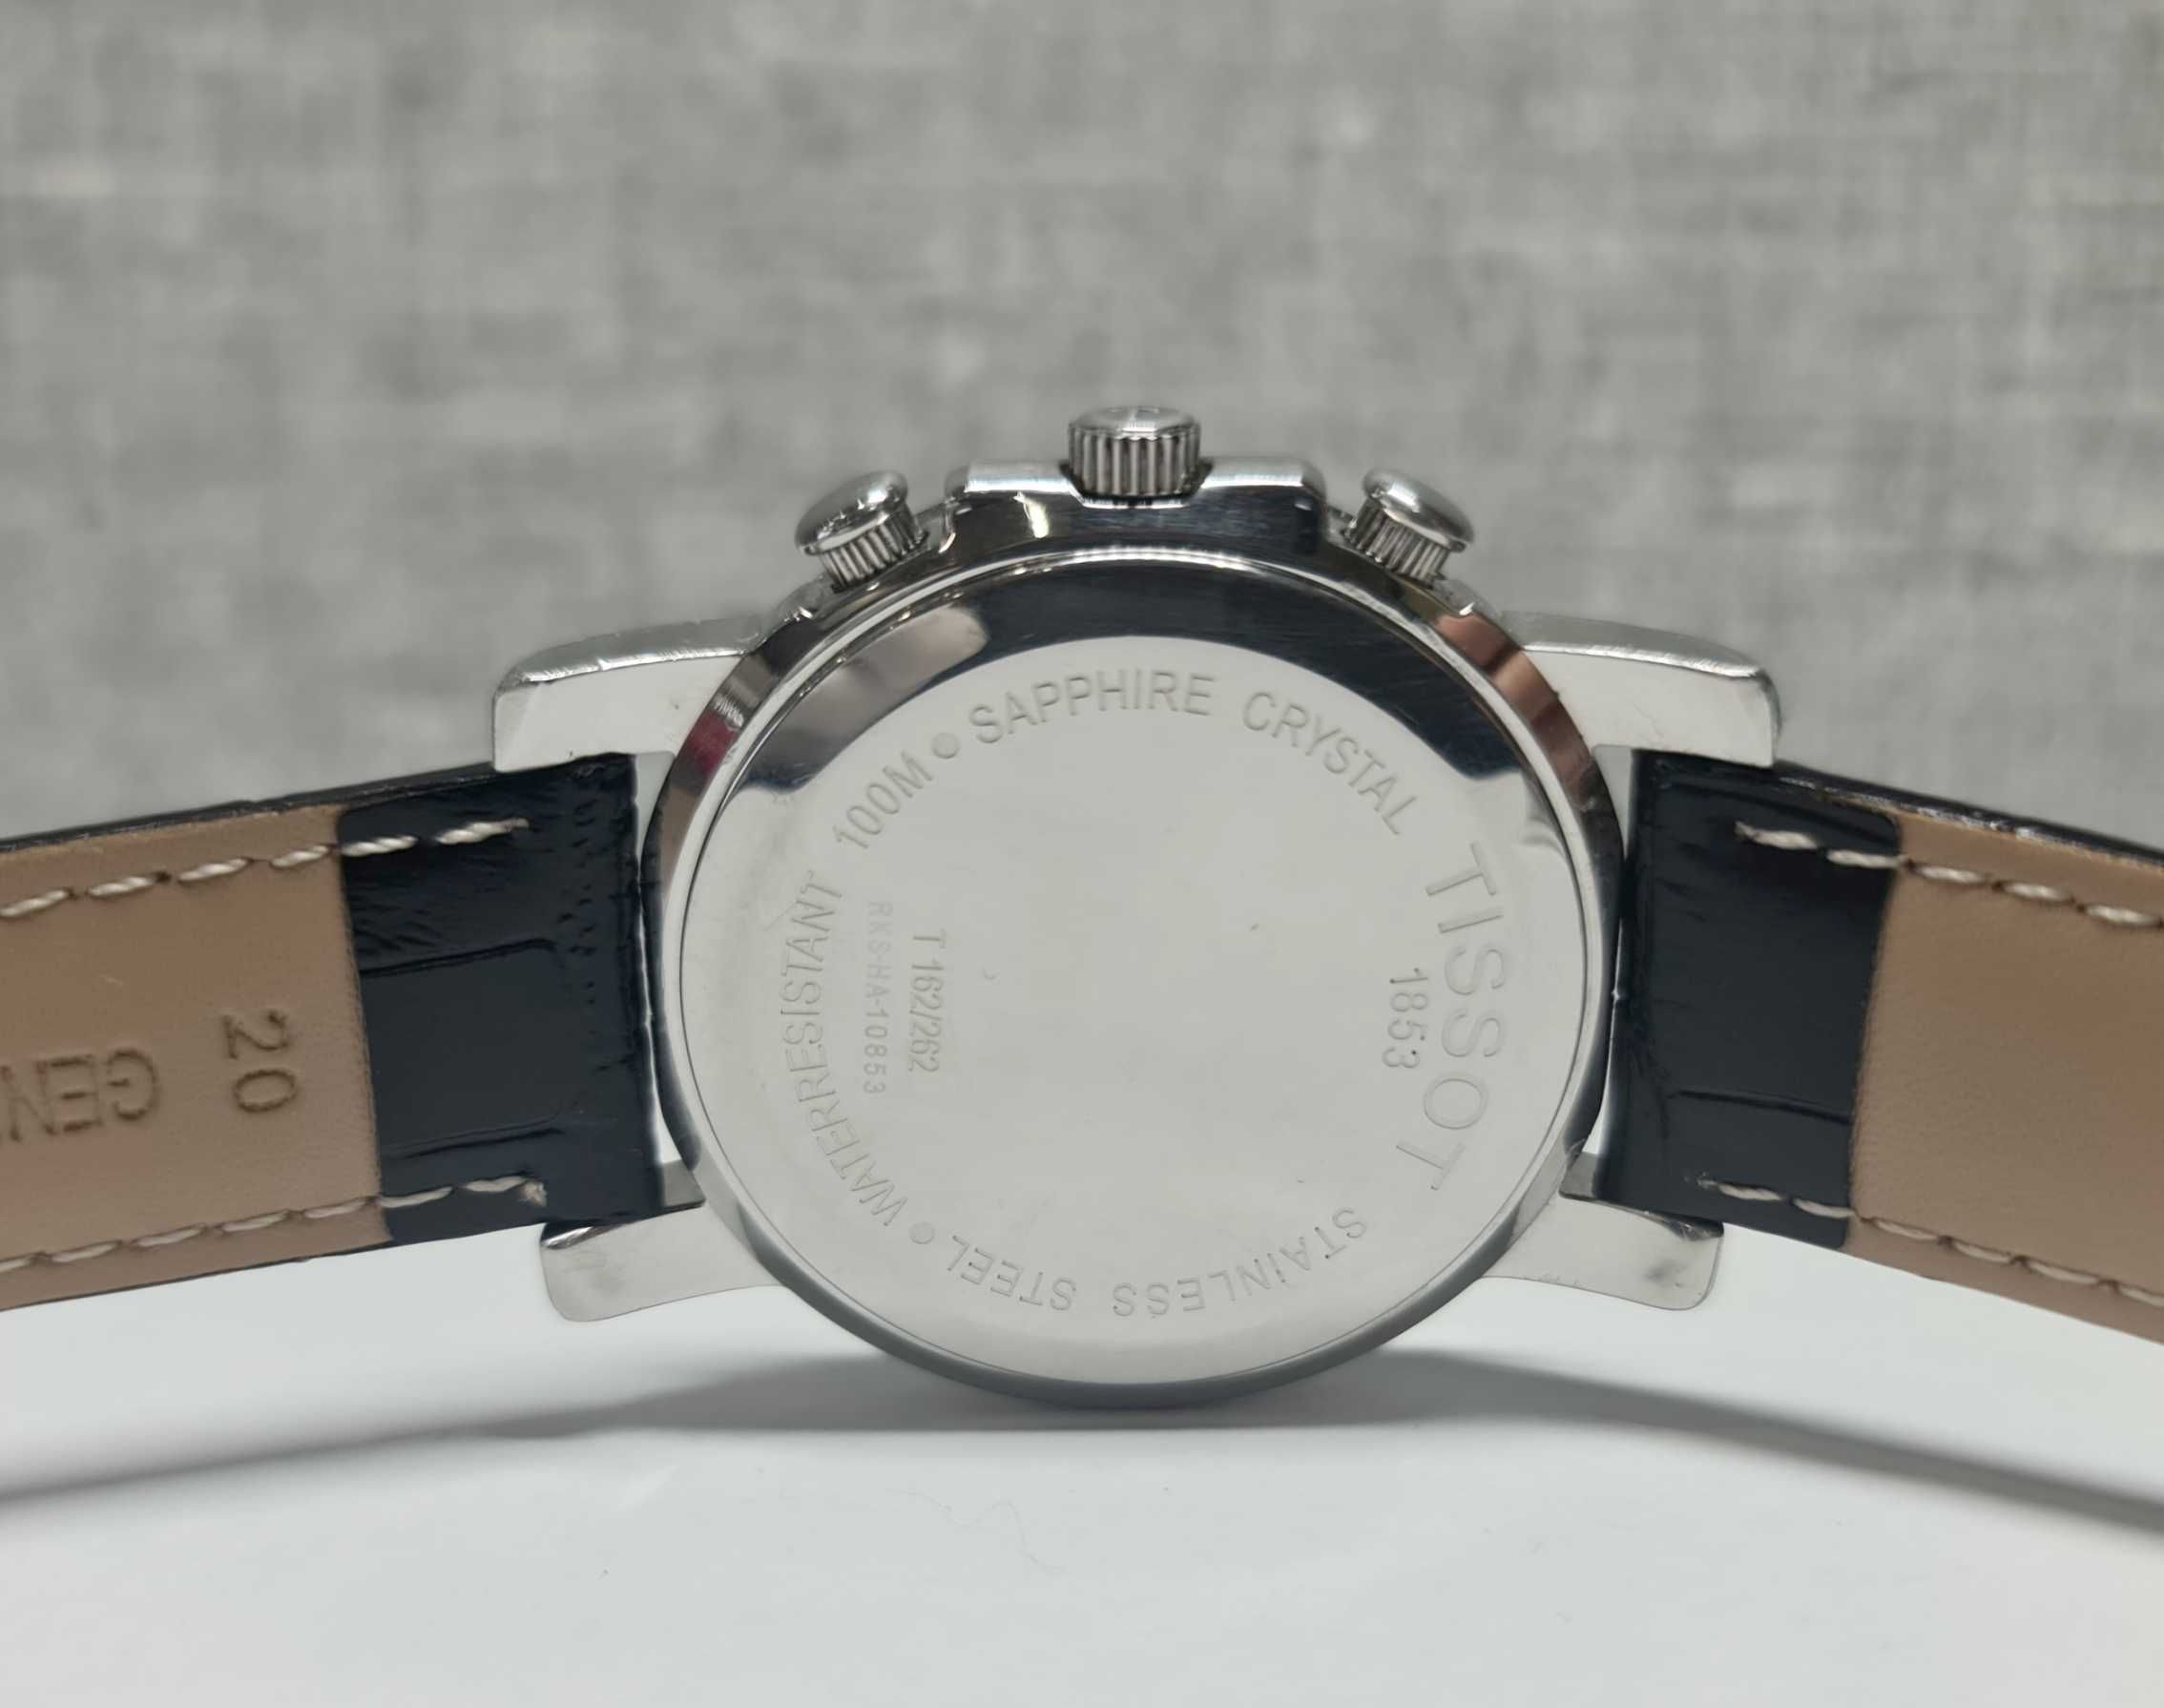 Чоловічий годинник часы Tissot T-Lord Chronograph Eta 251.262 27 jew